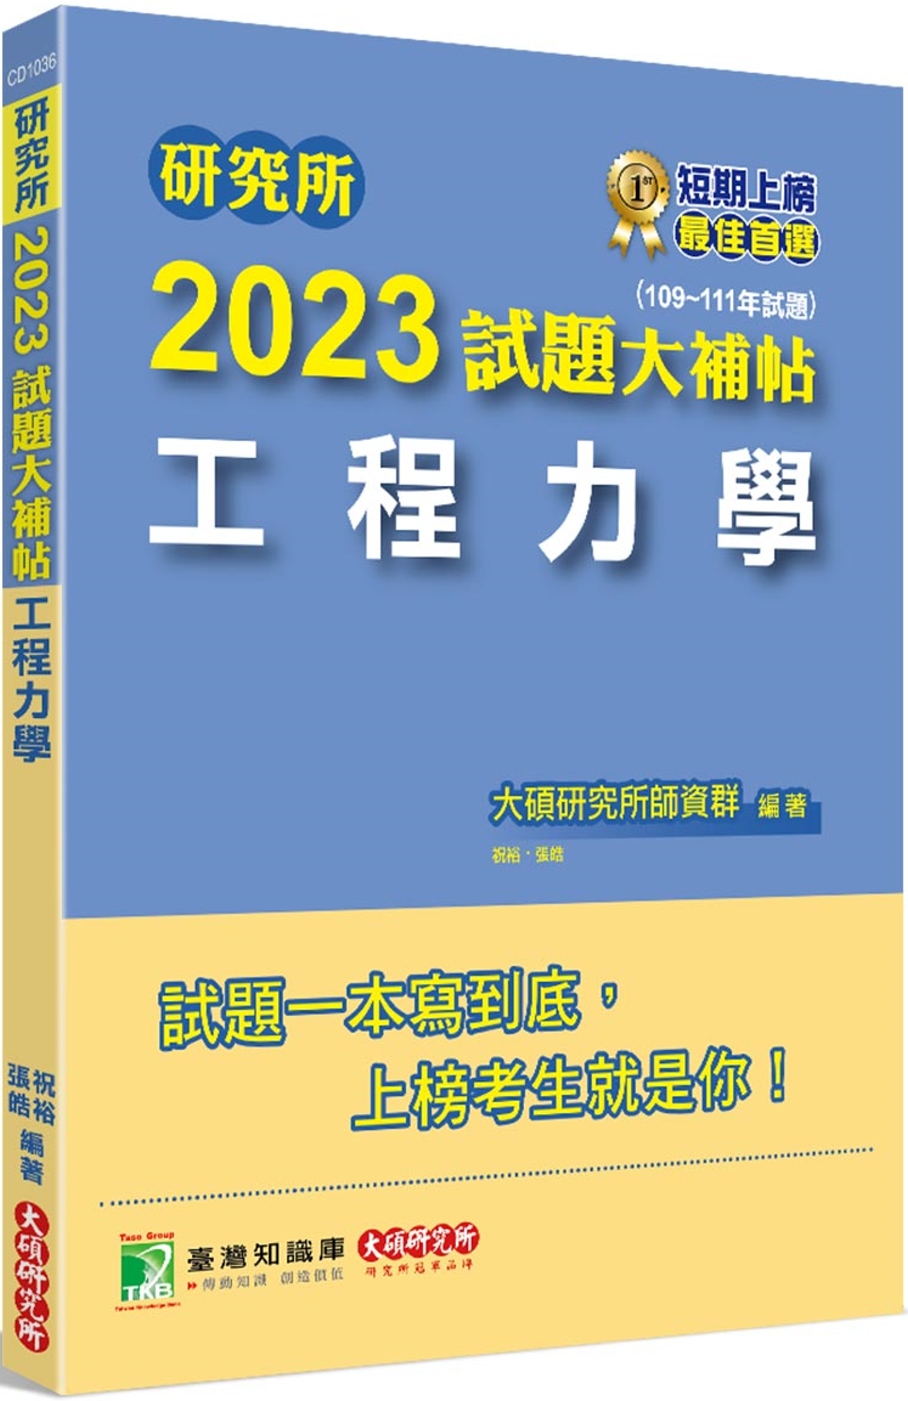 研究所2023試題大補帖【工程力學】(109~111年試題)...